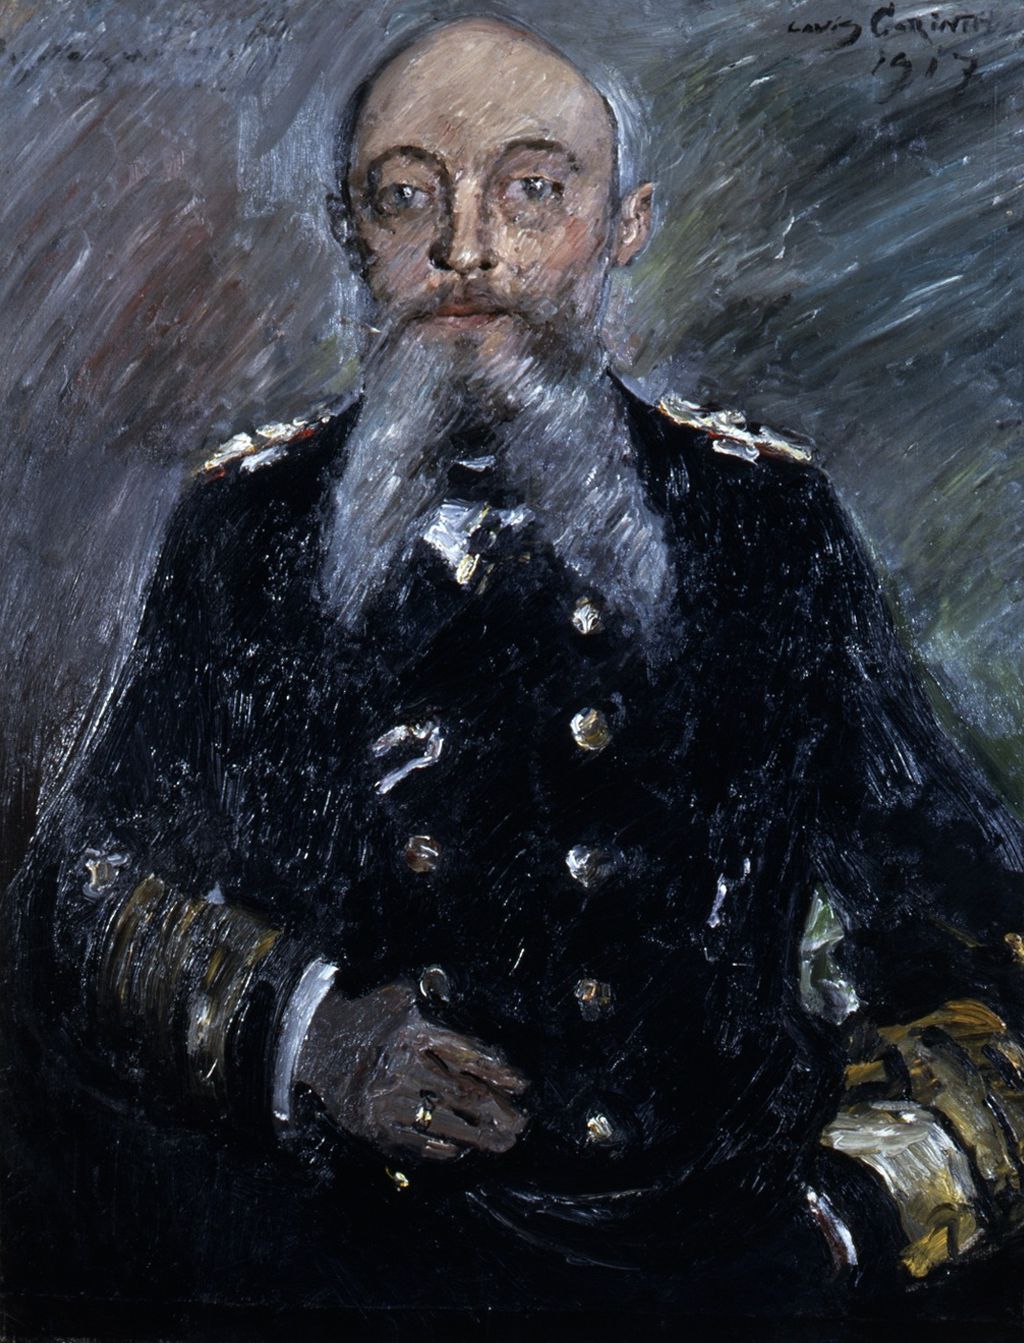 Gemälde: Corinth, Lovis "Graßadmiral von Tirpitz", 1917